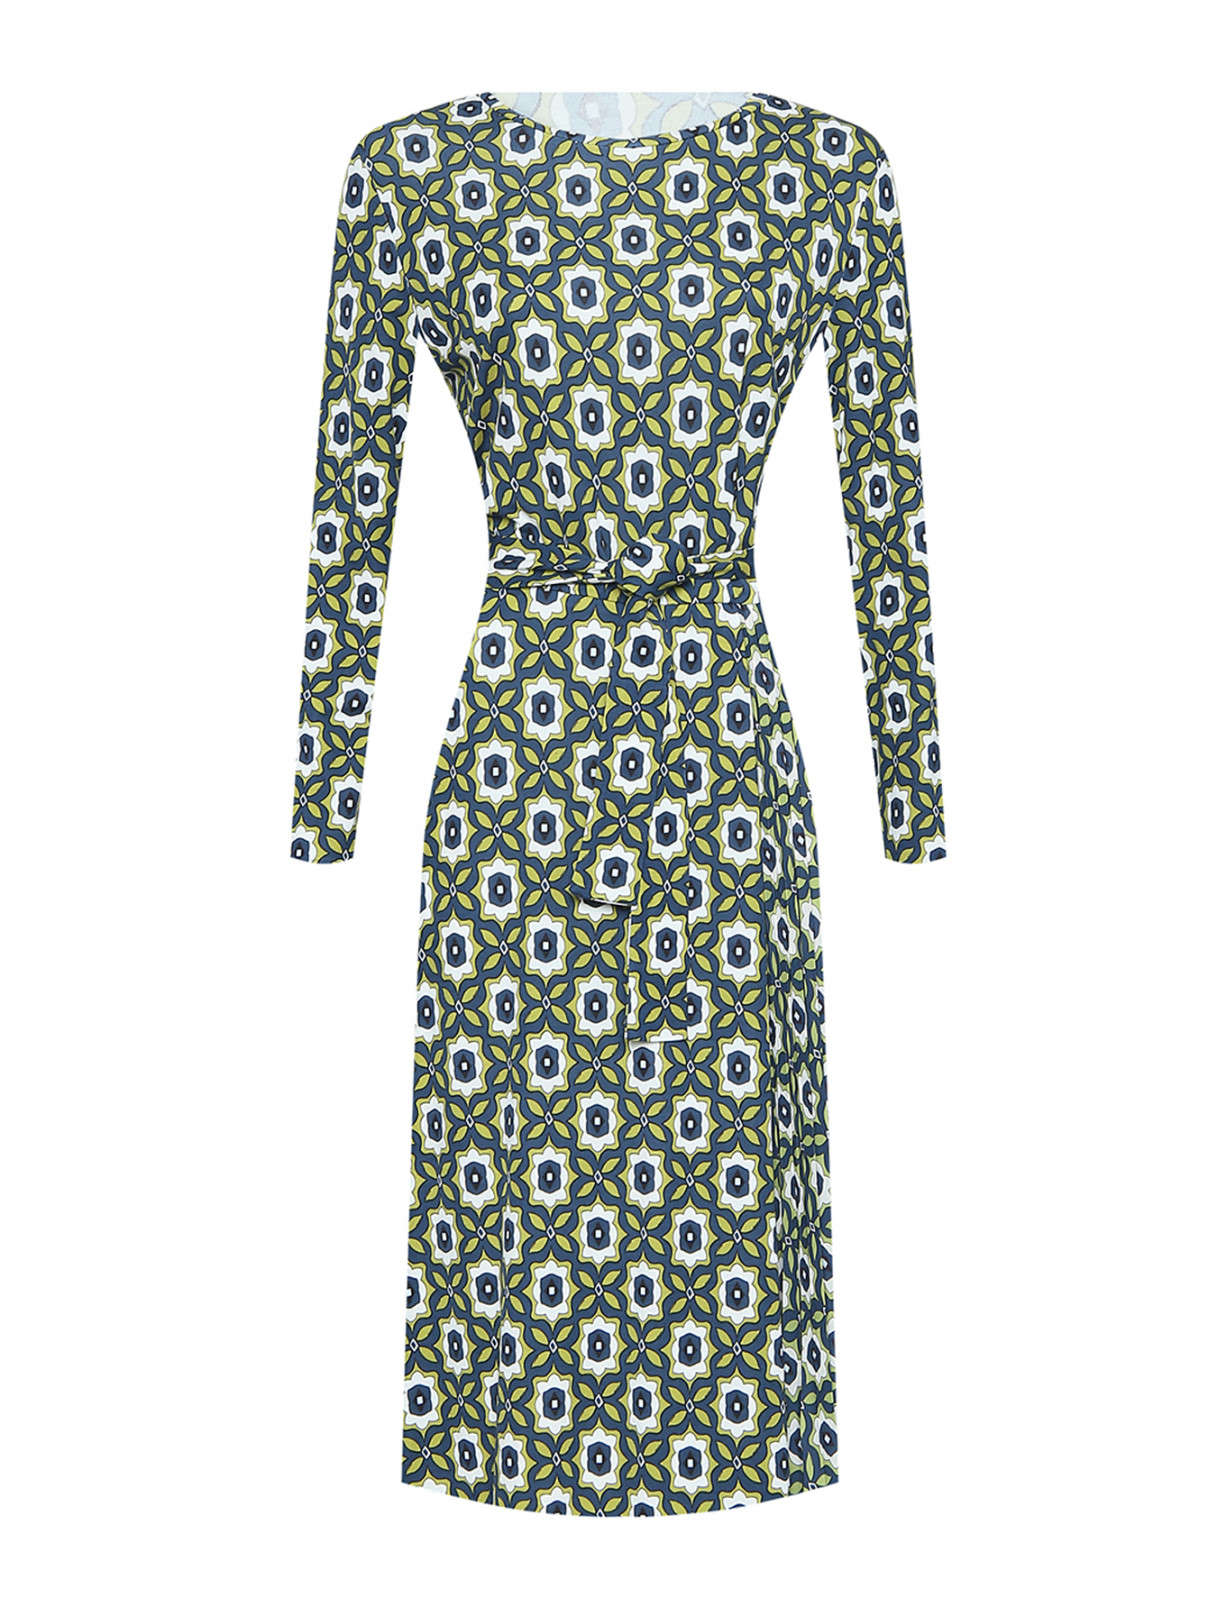 Трикотажное платье с узором Weekend Max Mara  –  Общий вид  – Цвет:  Узор